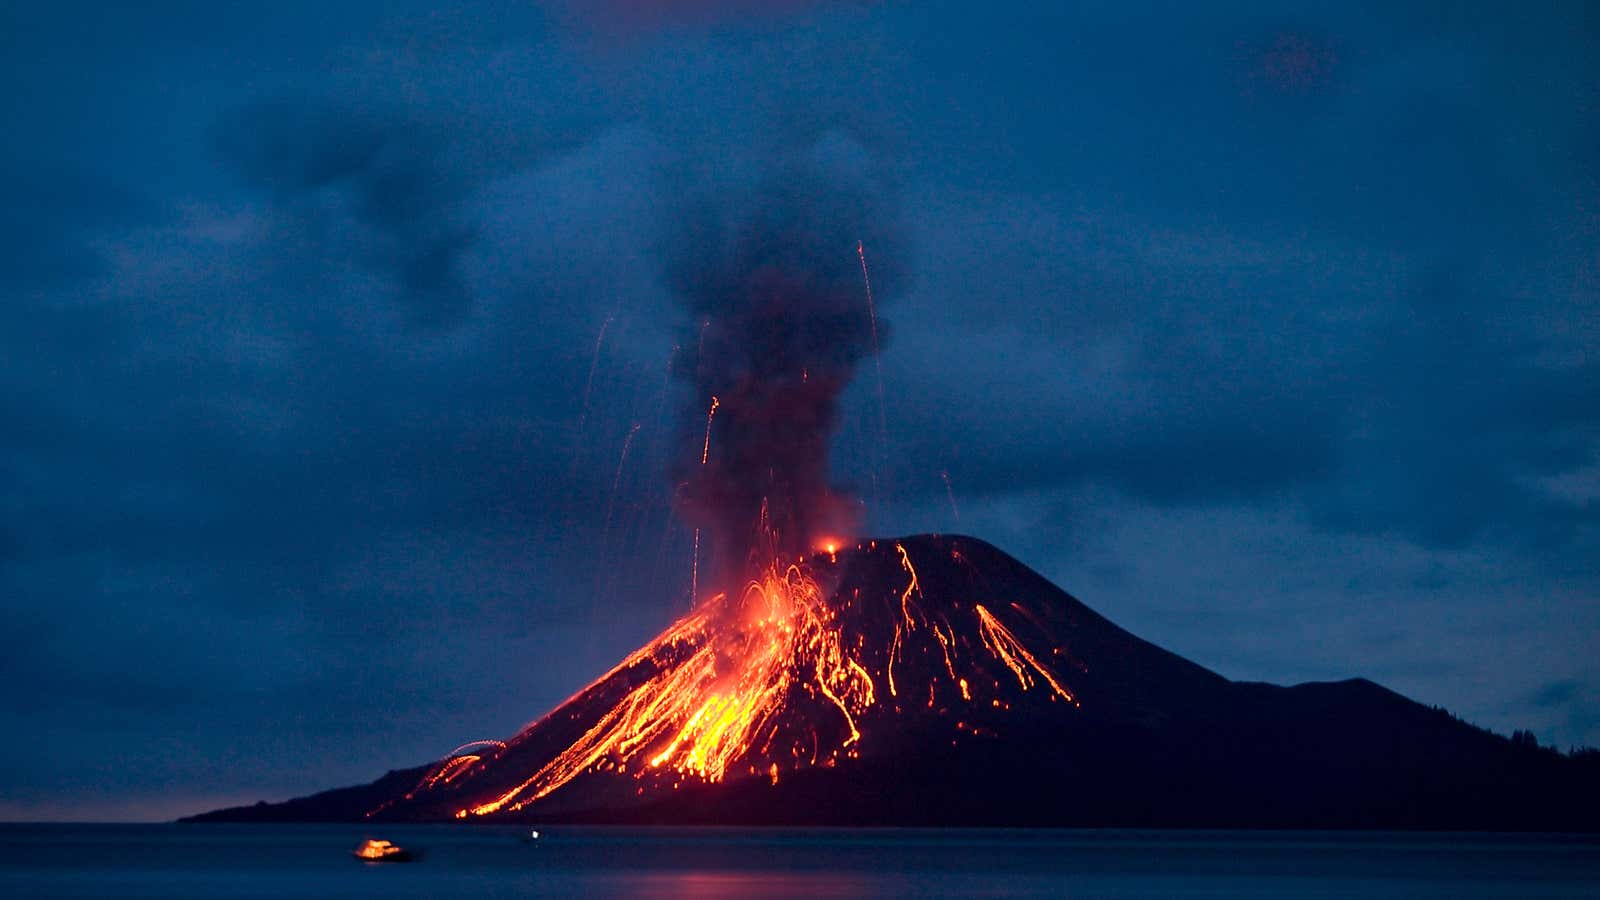 Anak Krakatau erupting in 2007.